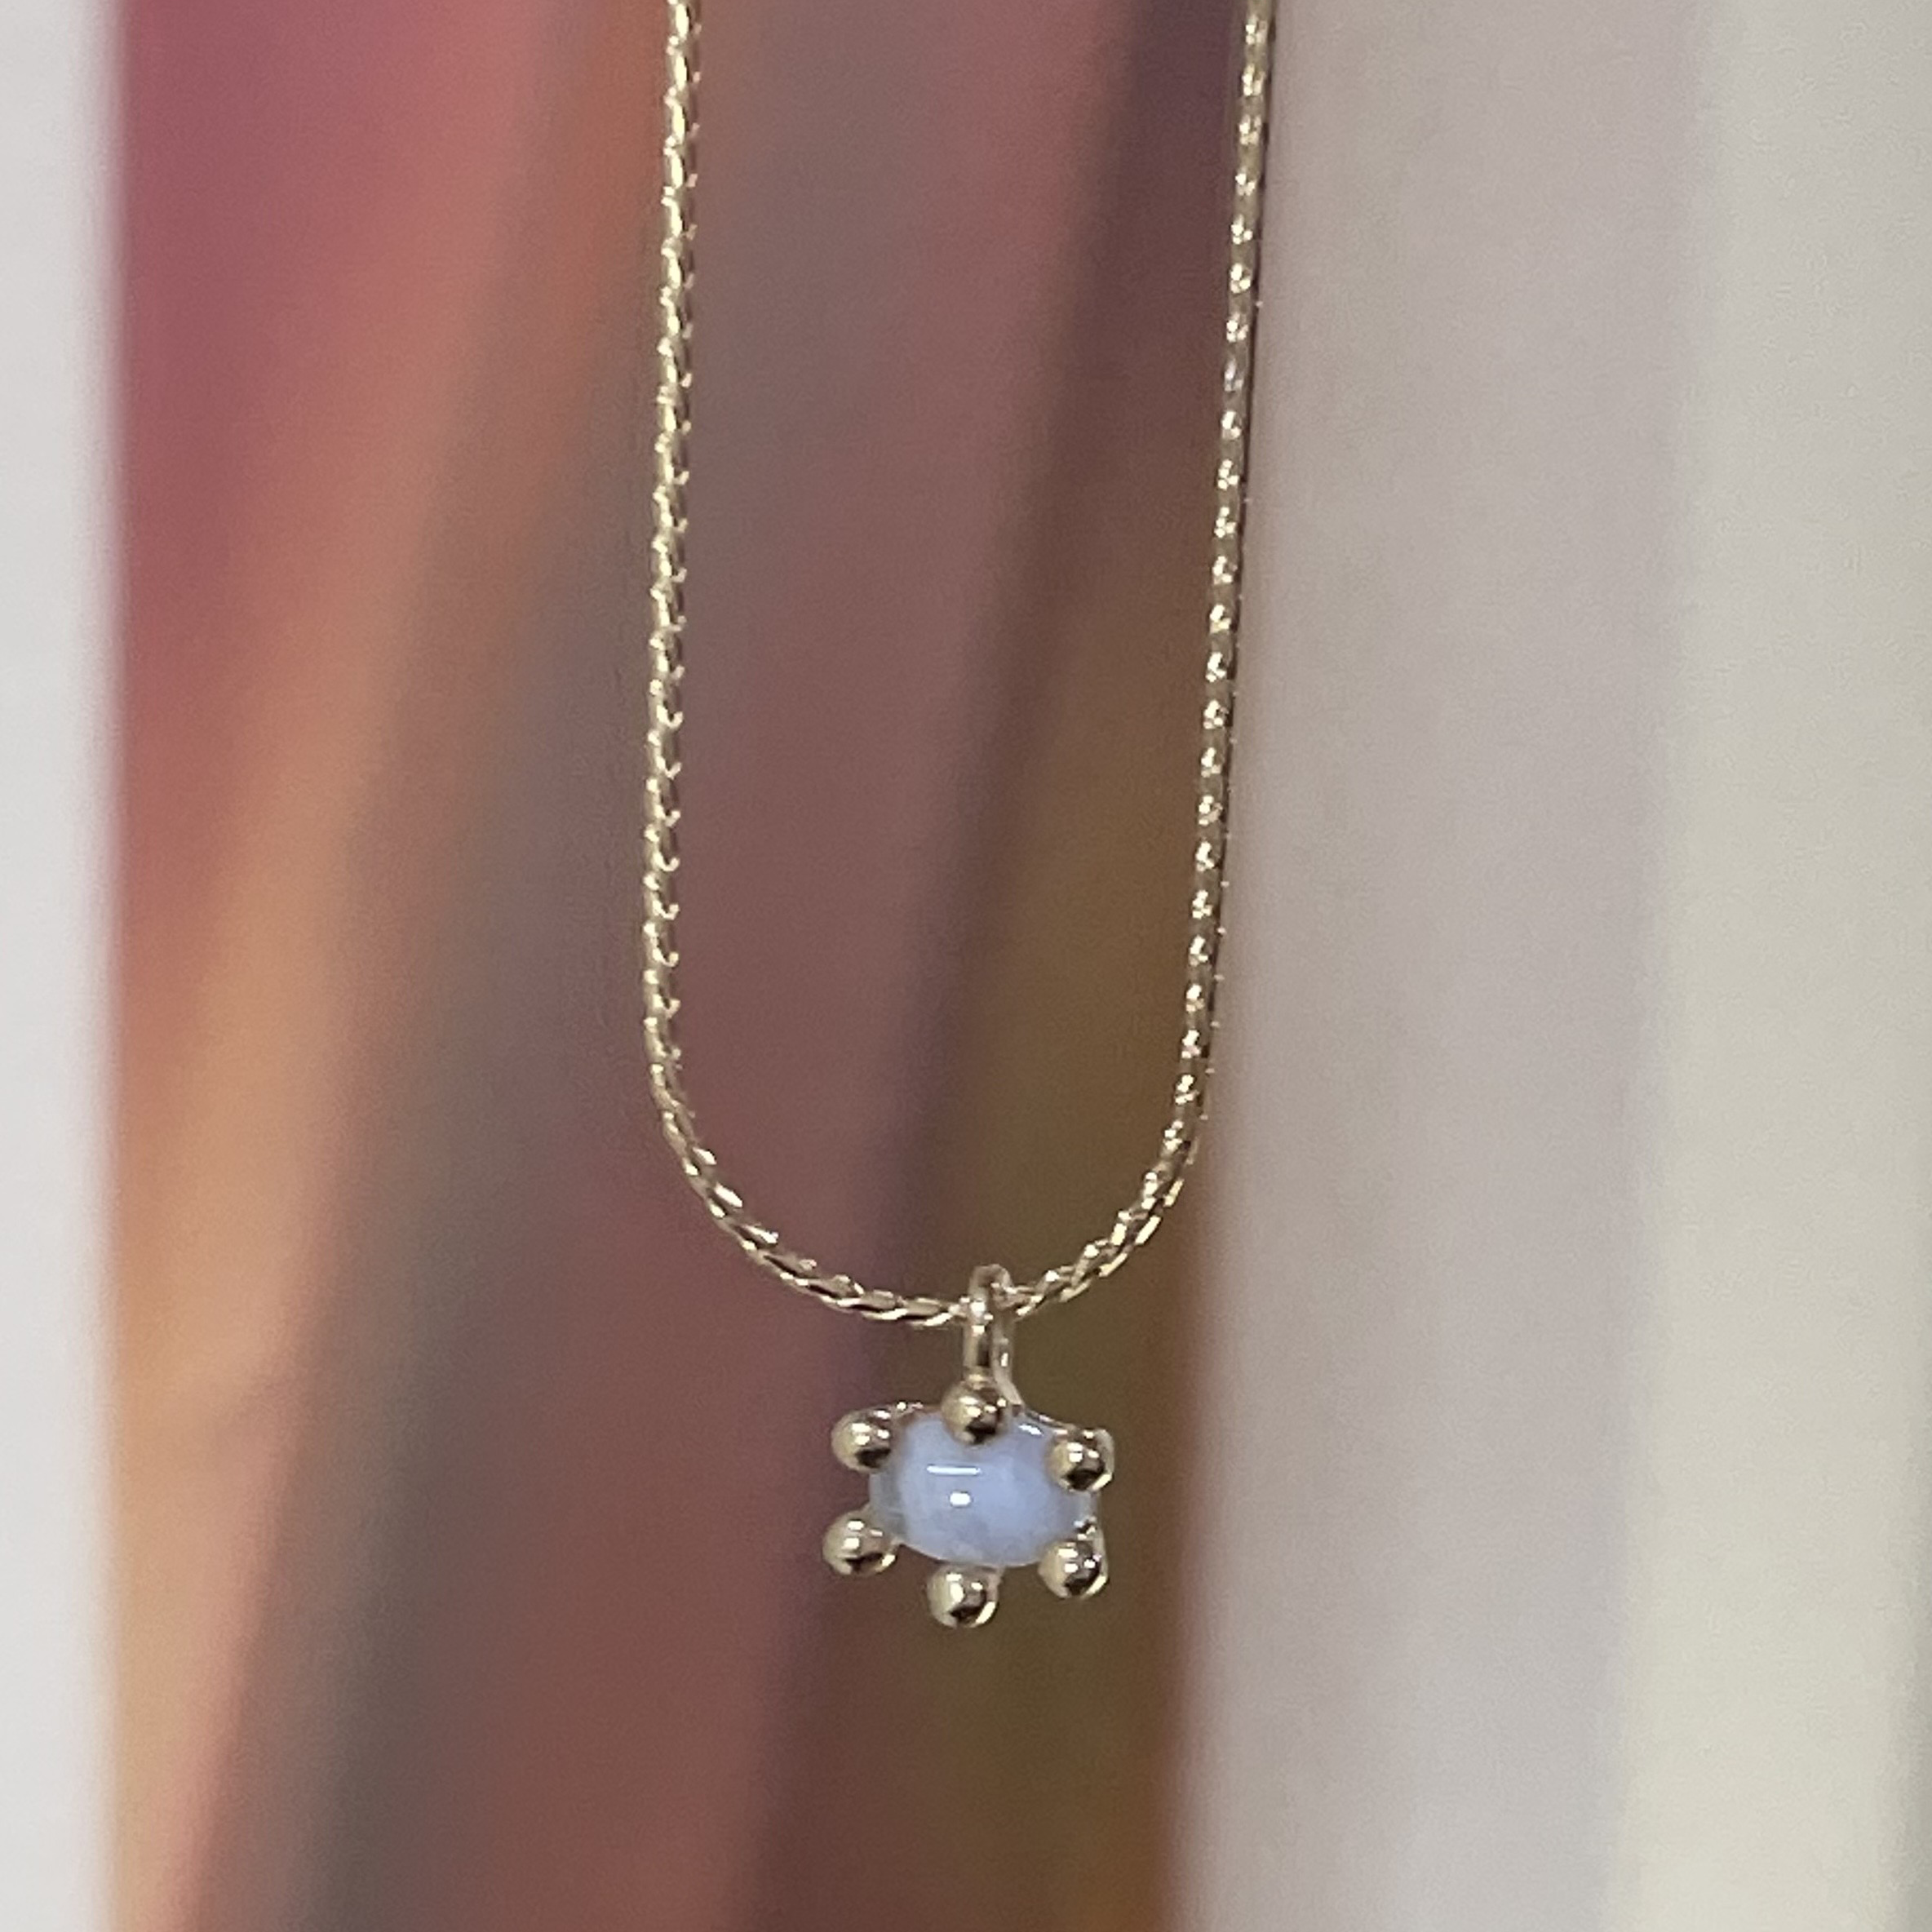 blue lace agate necklace